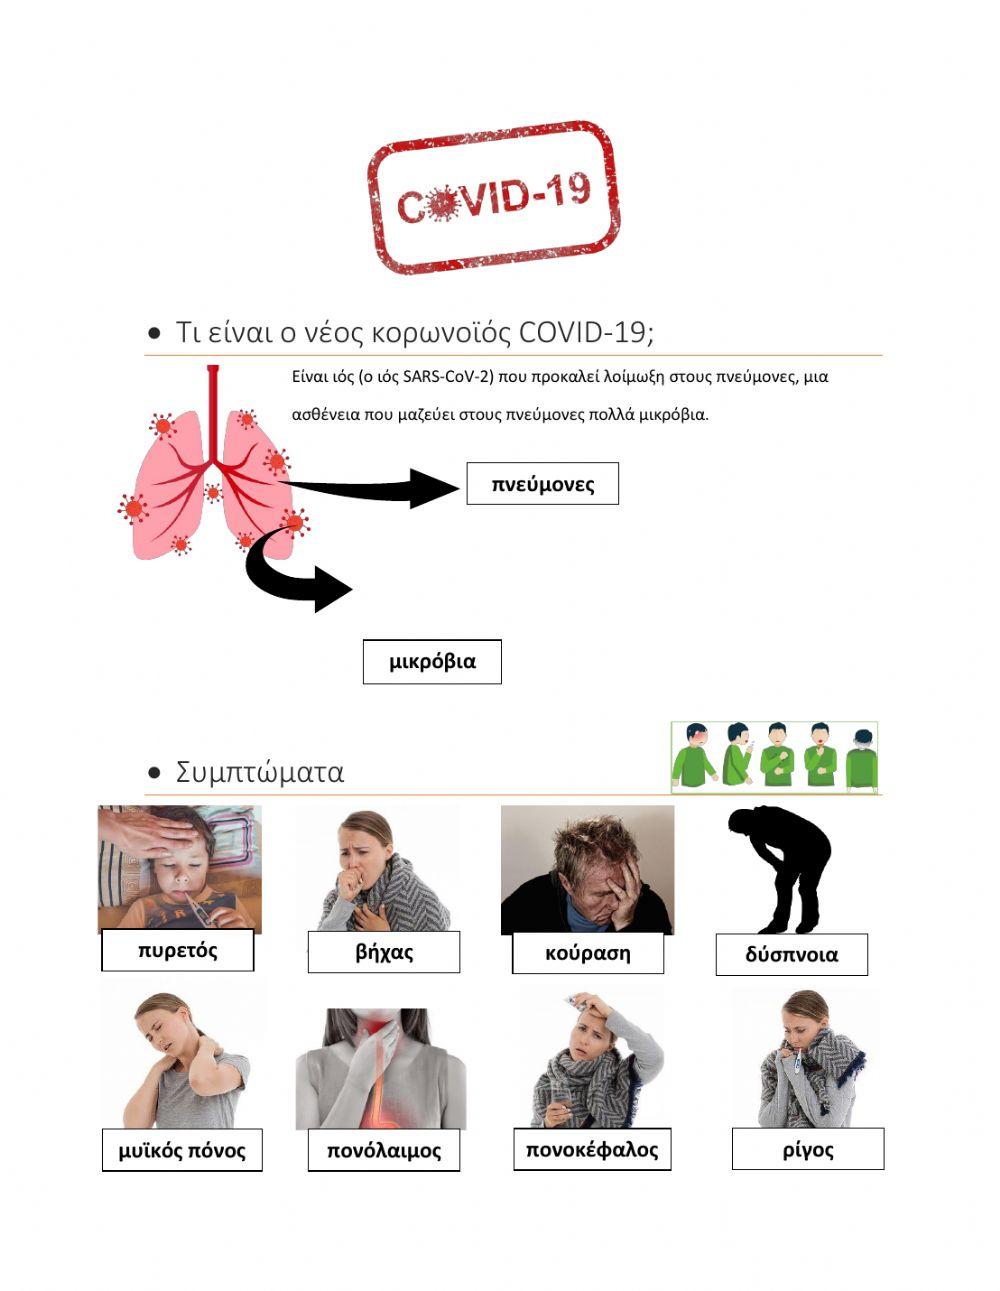 Τι είναι ο COVID-19 και τι συμπτώματα έχει-